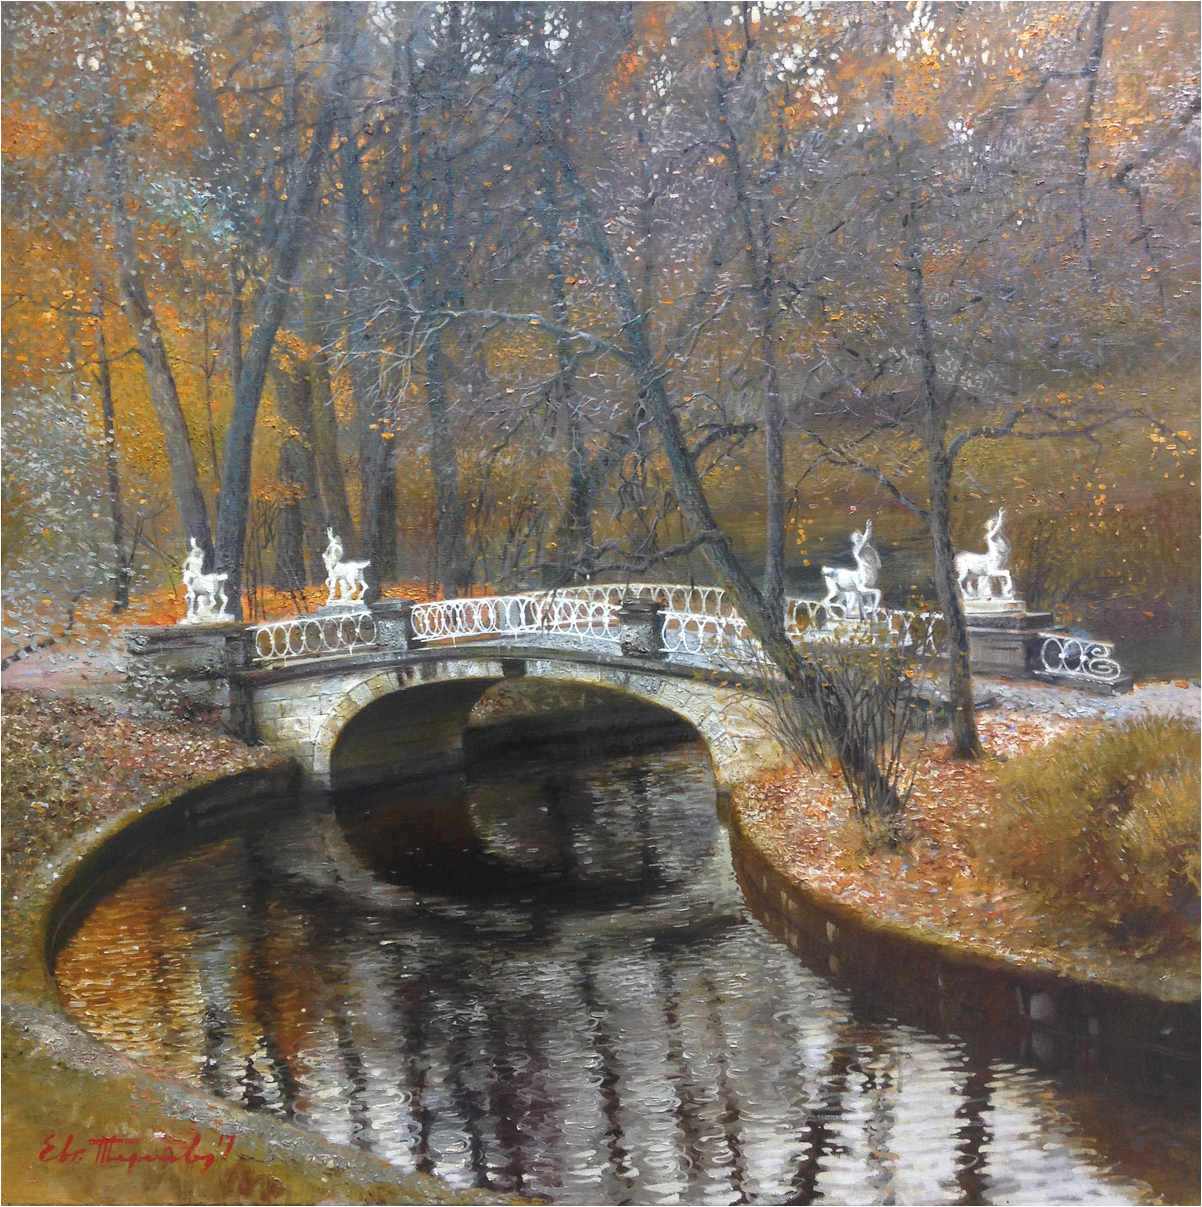 The Bridge of Centaurs - 1, Eugene Terekhov, Buy the painting Oil